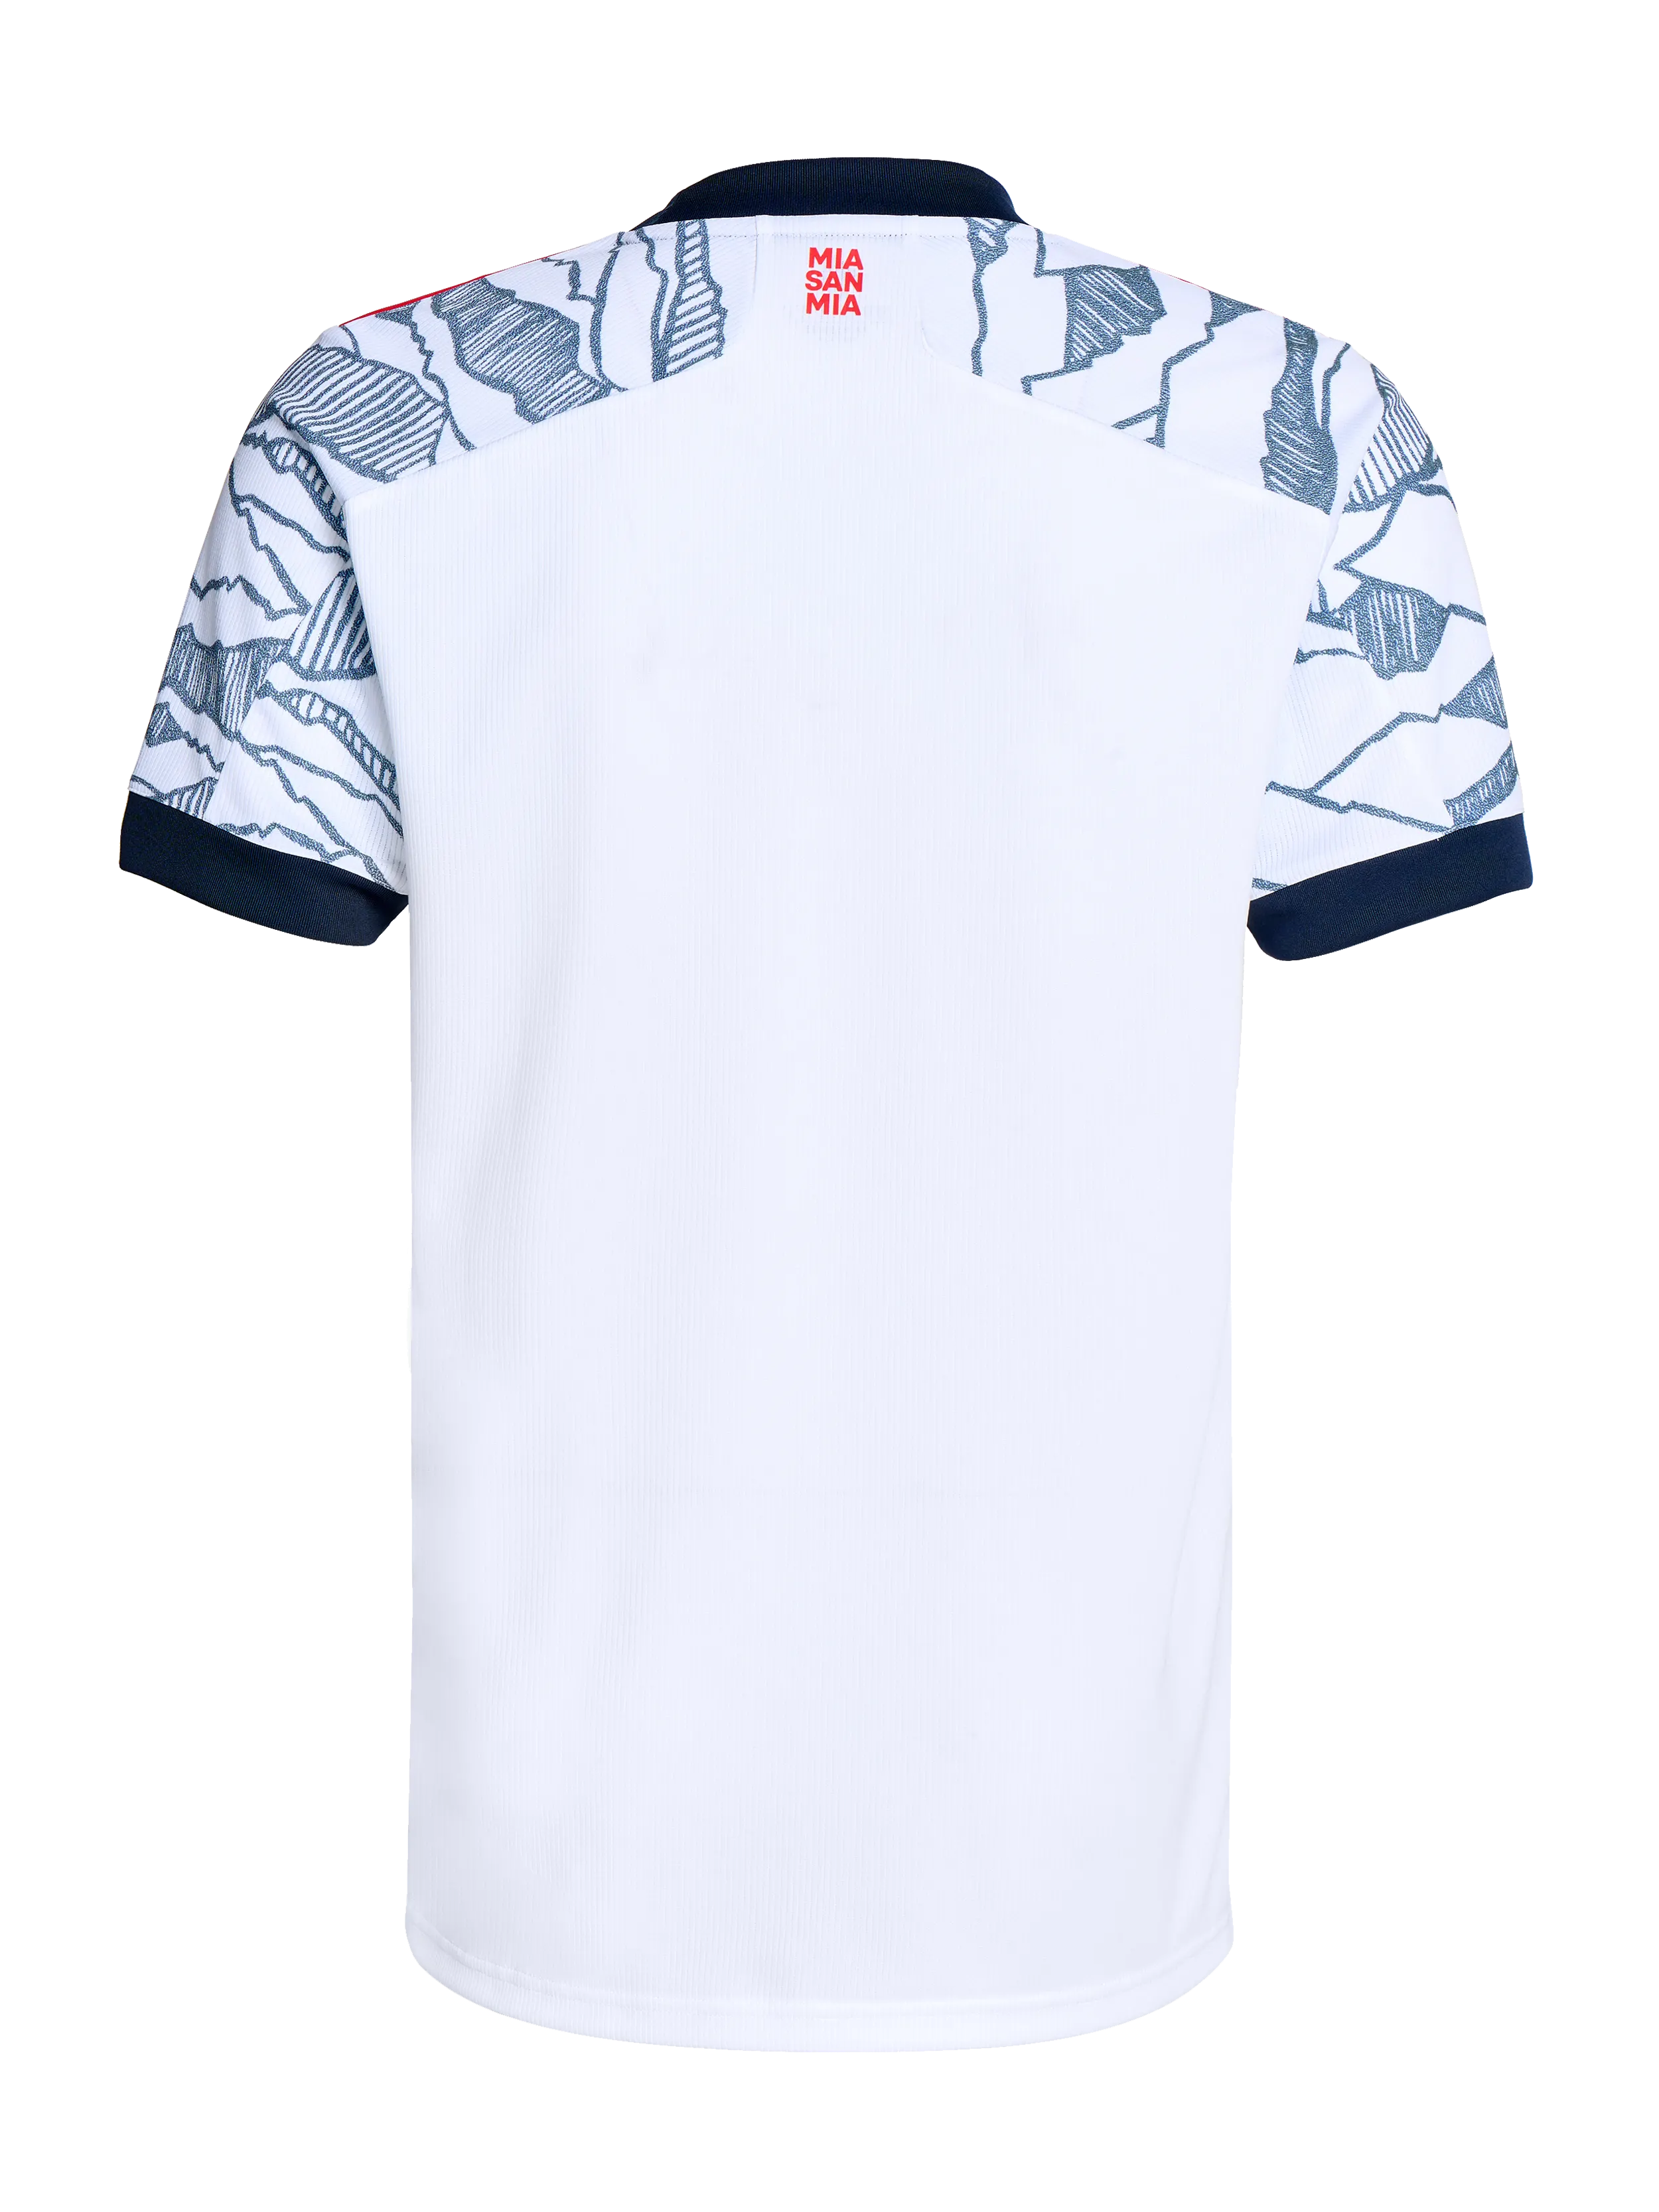 Mens FC Bayern Third Football Summer Sport Shirt T-Shirt Tee Top 2021-22